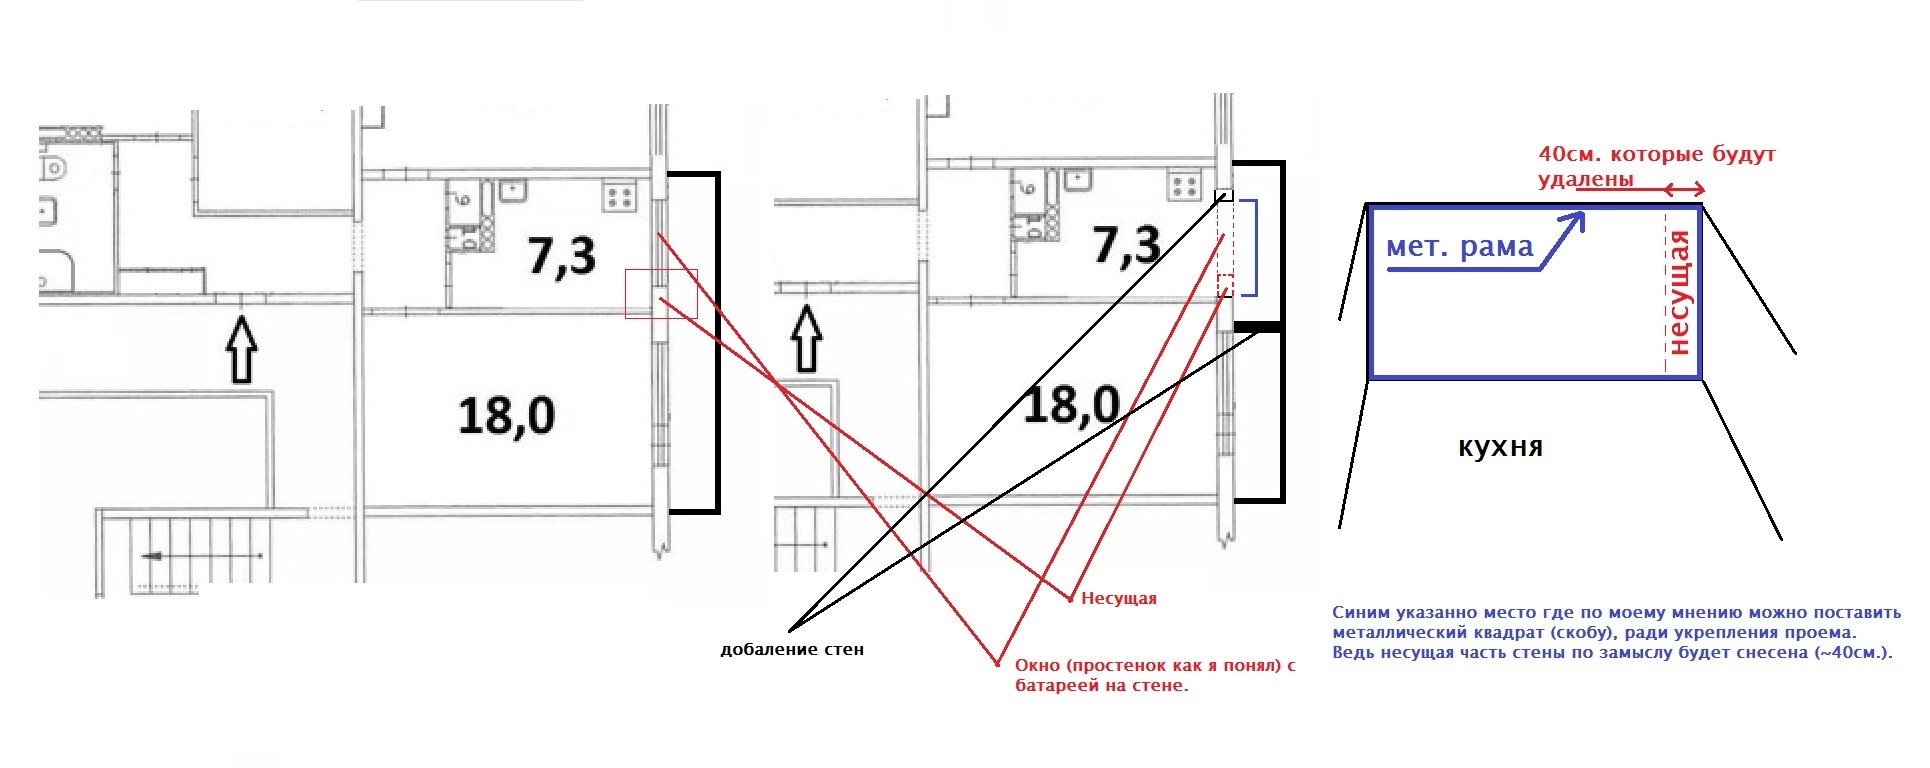 Как определить несущие стены в квартире в панельном